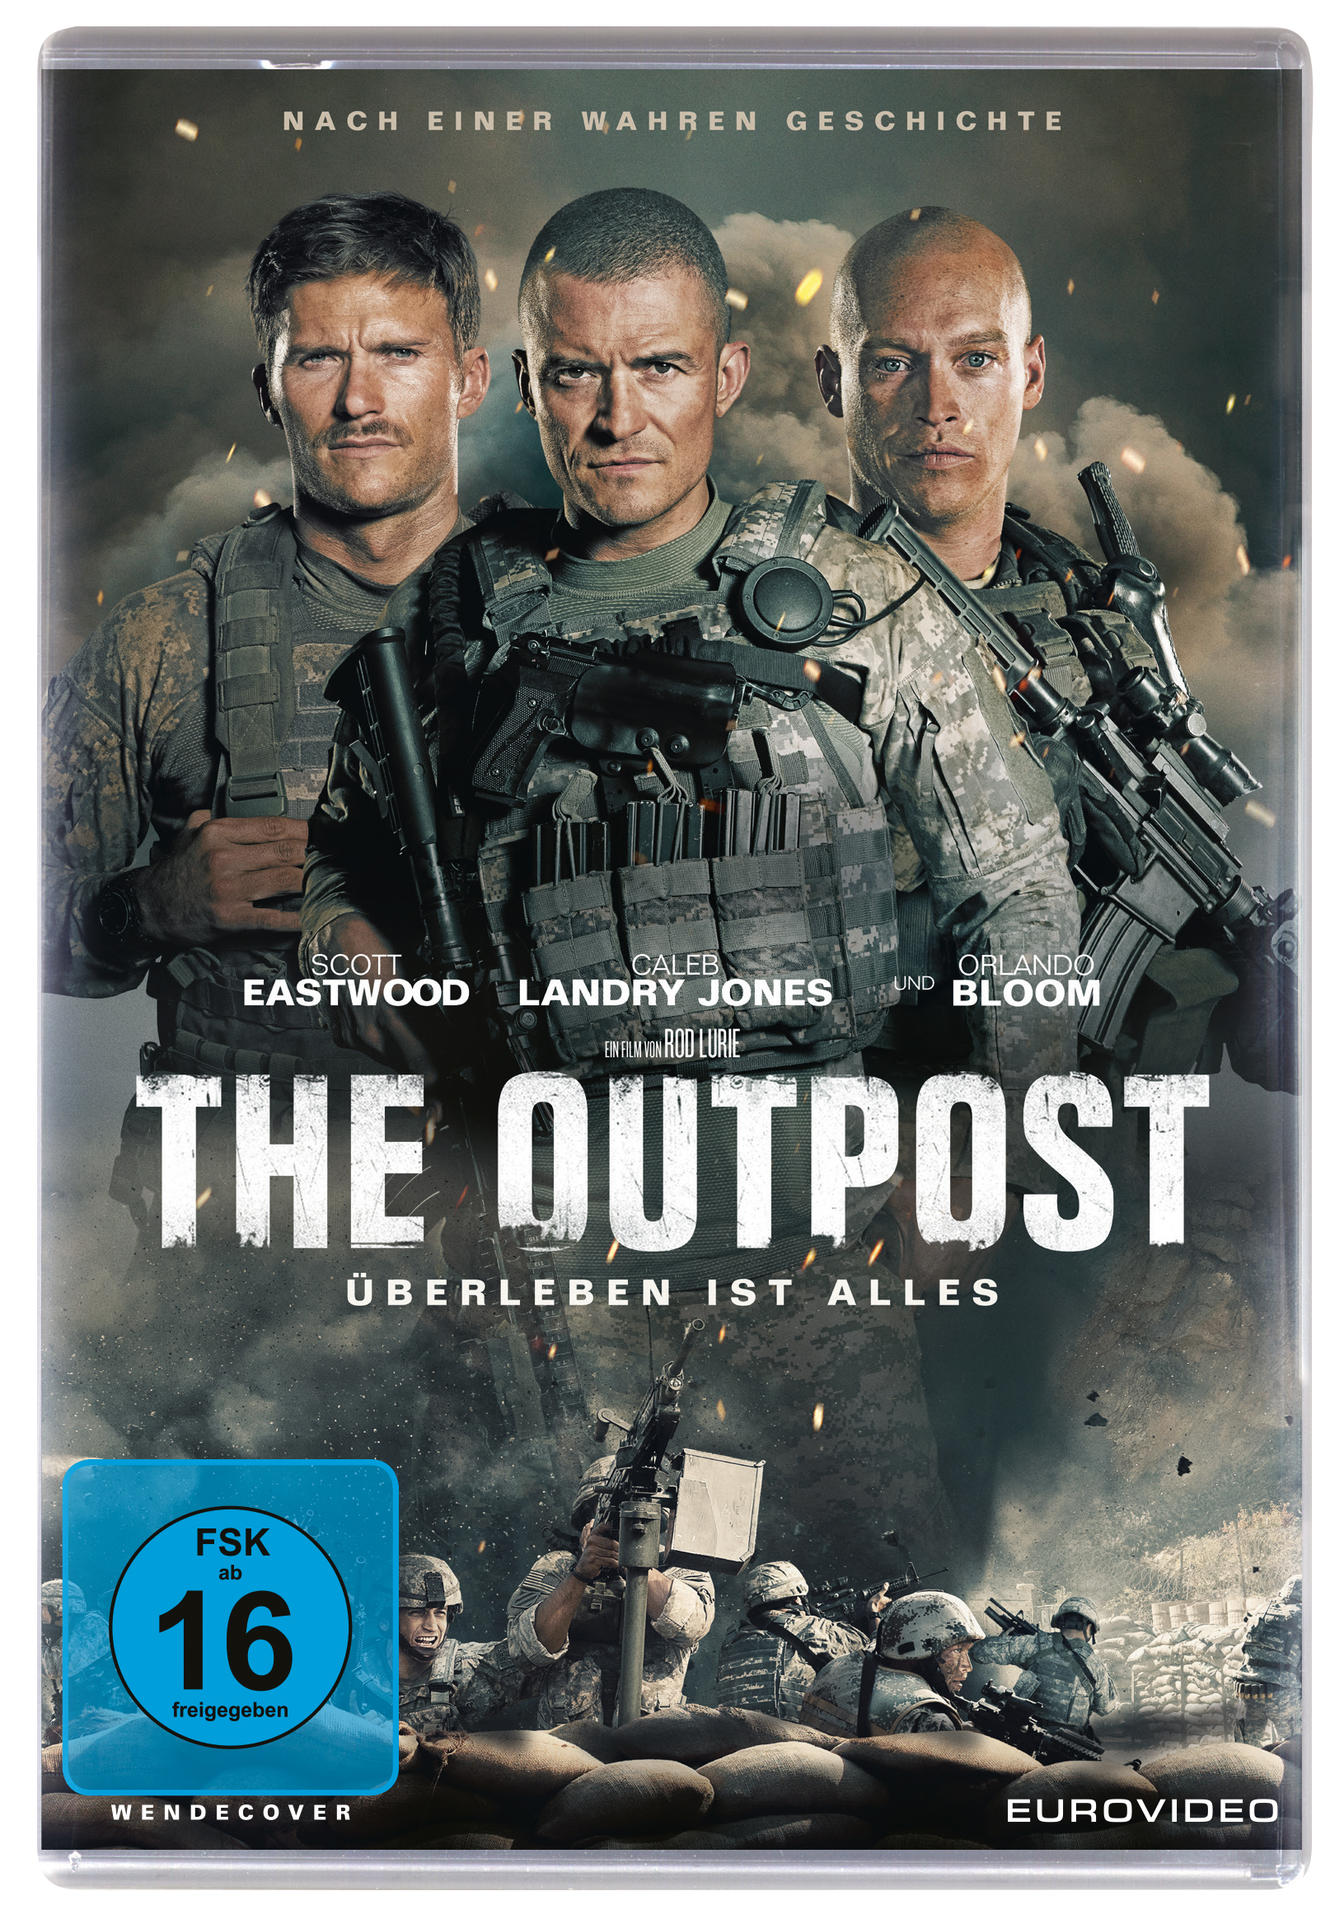 The Outpost - alles ist DVD Überleben